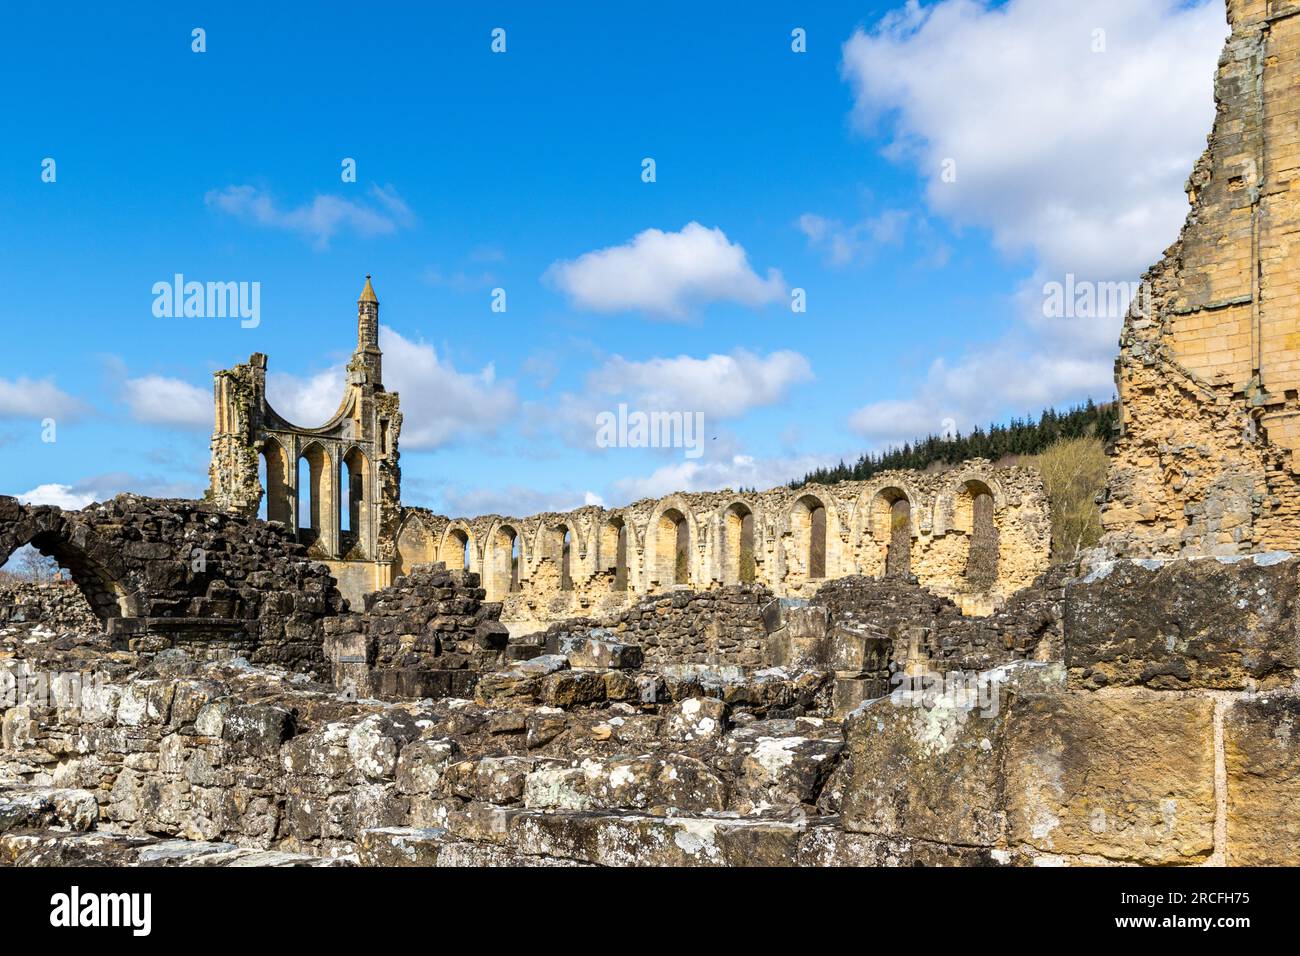 Wunderschönes Foto von Ruinen einer Abtei in Yorkshire Stockfoto